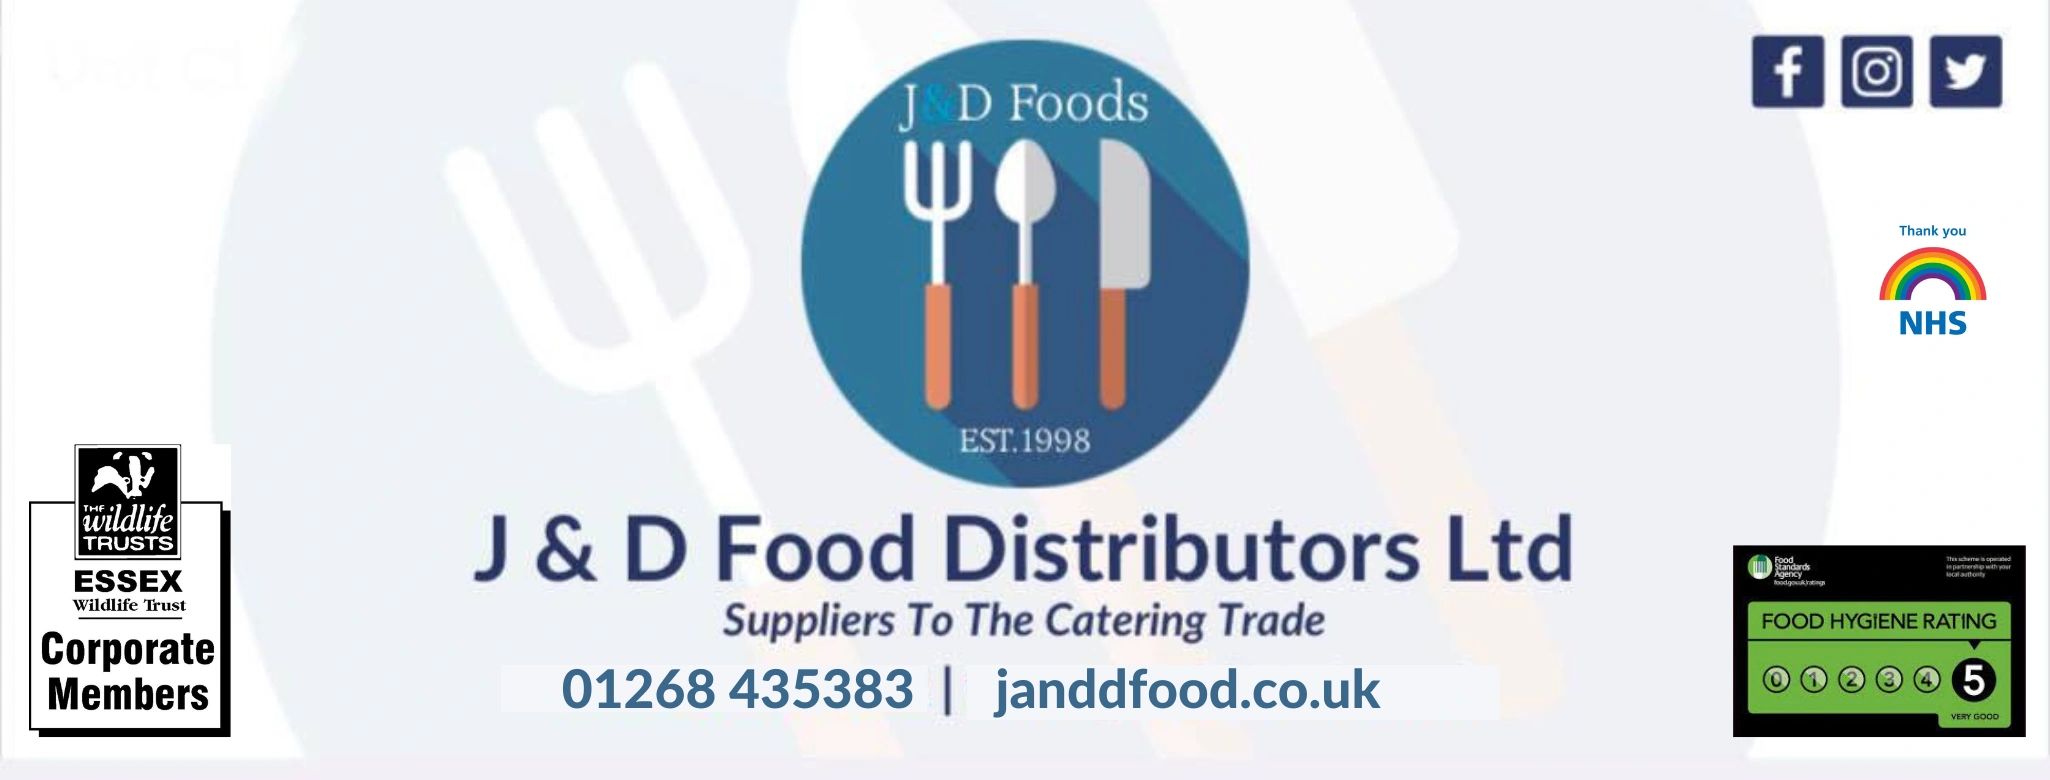 J & D Foods - Food Service, Restaurant Supplier